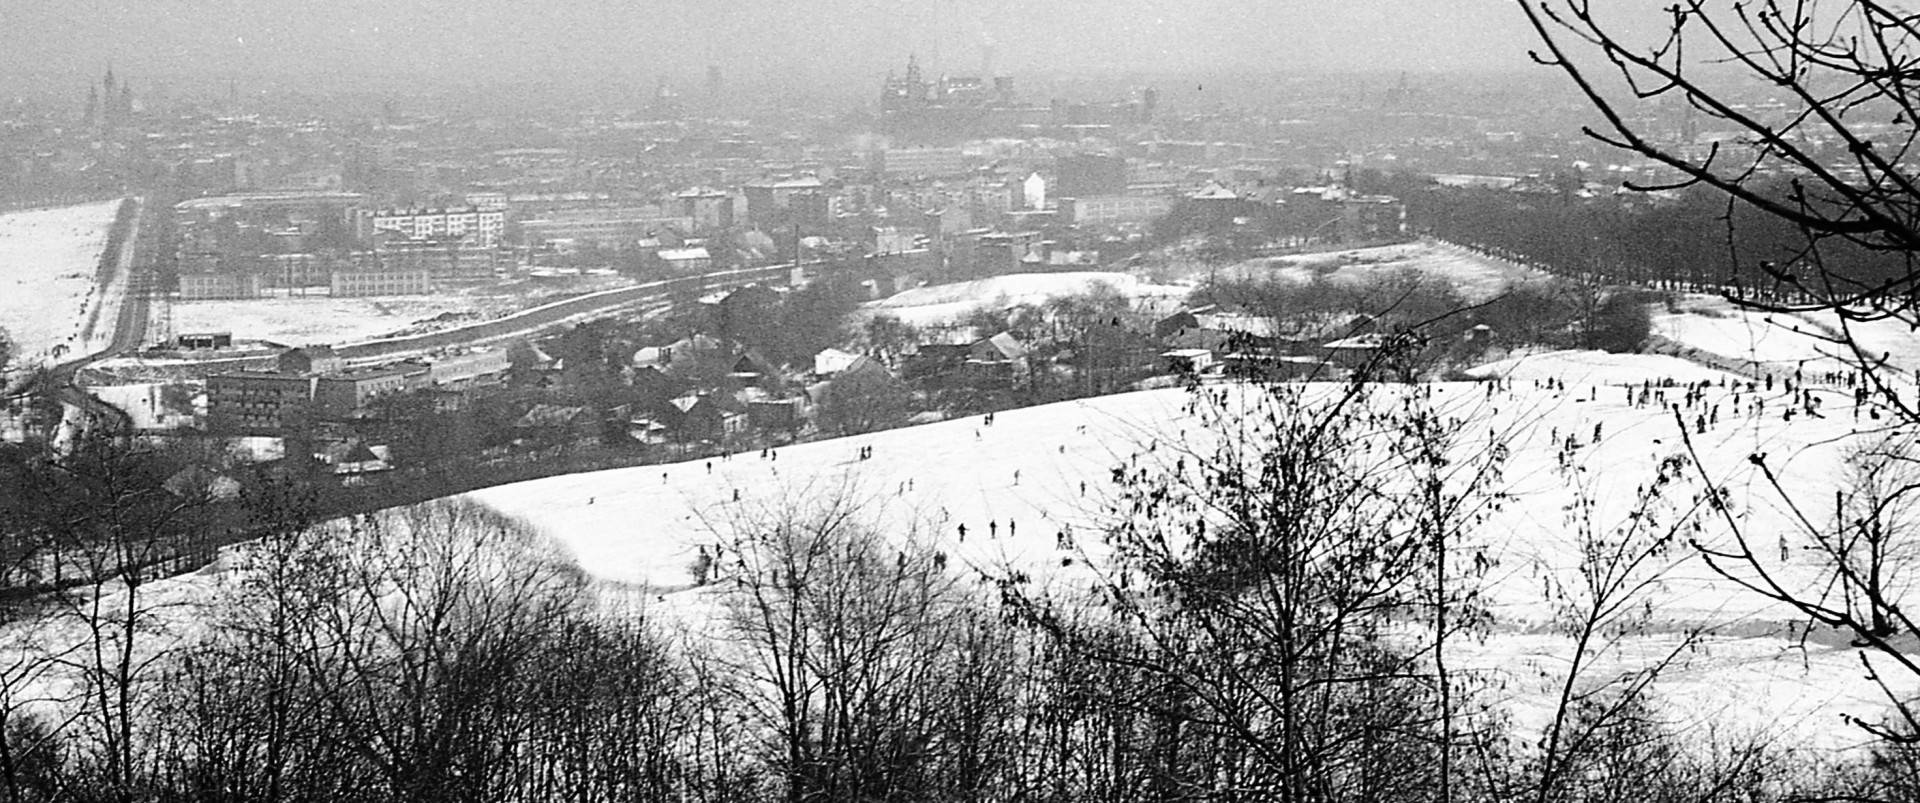 Garść wspomnień z czasów gdy w Krakowie jeździło się na nartach